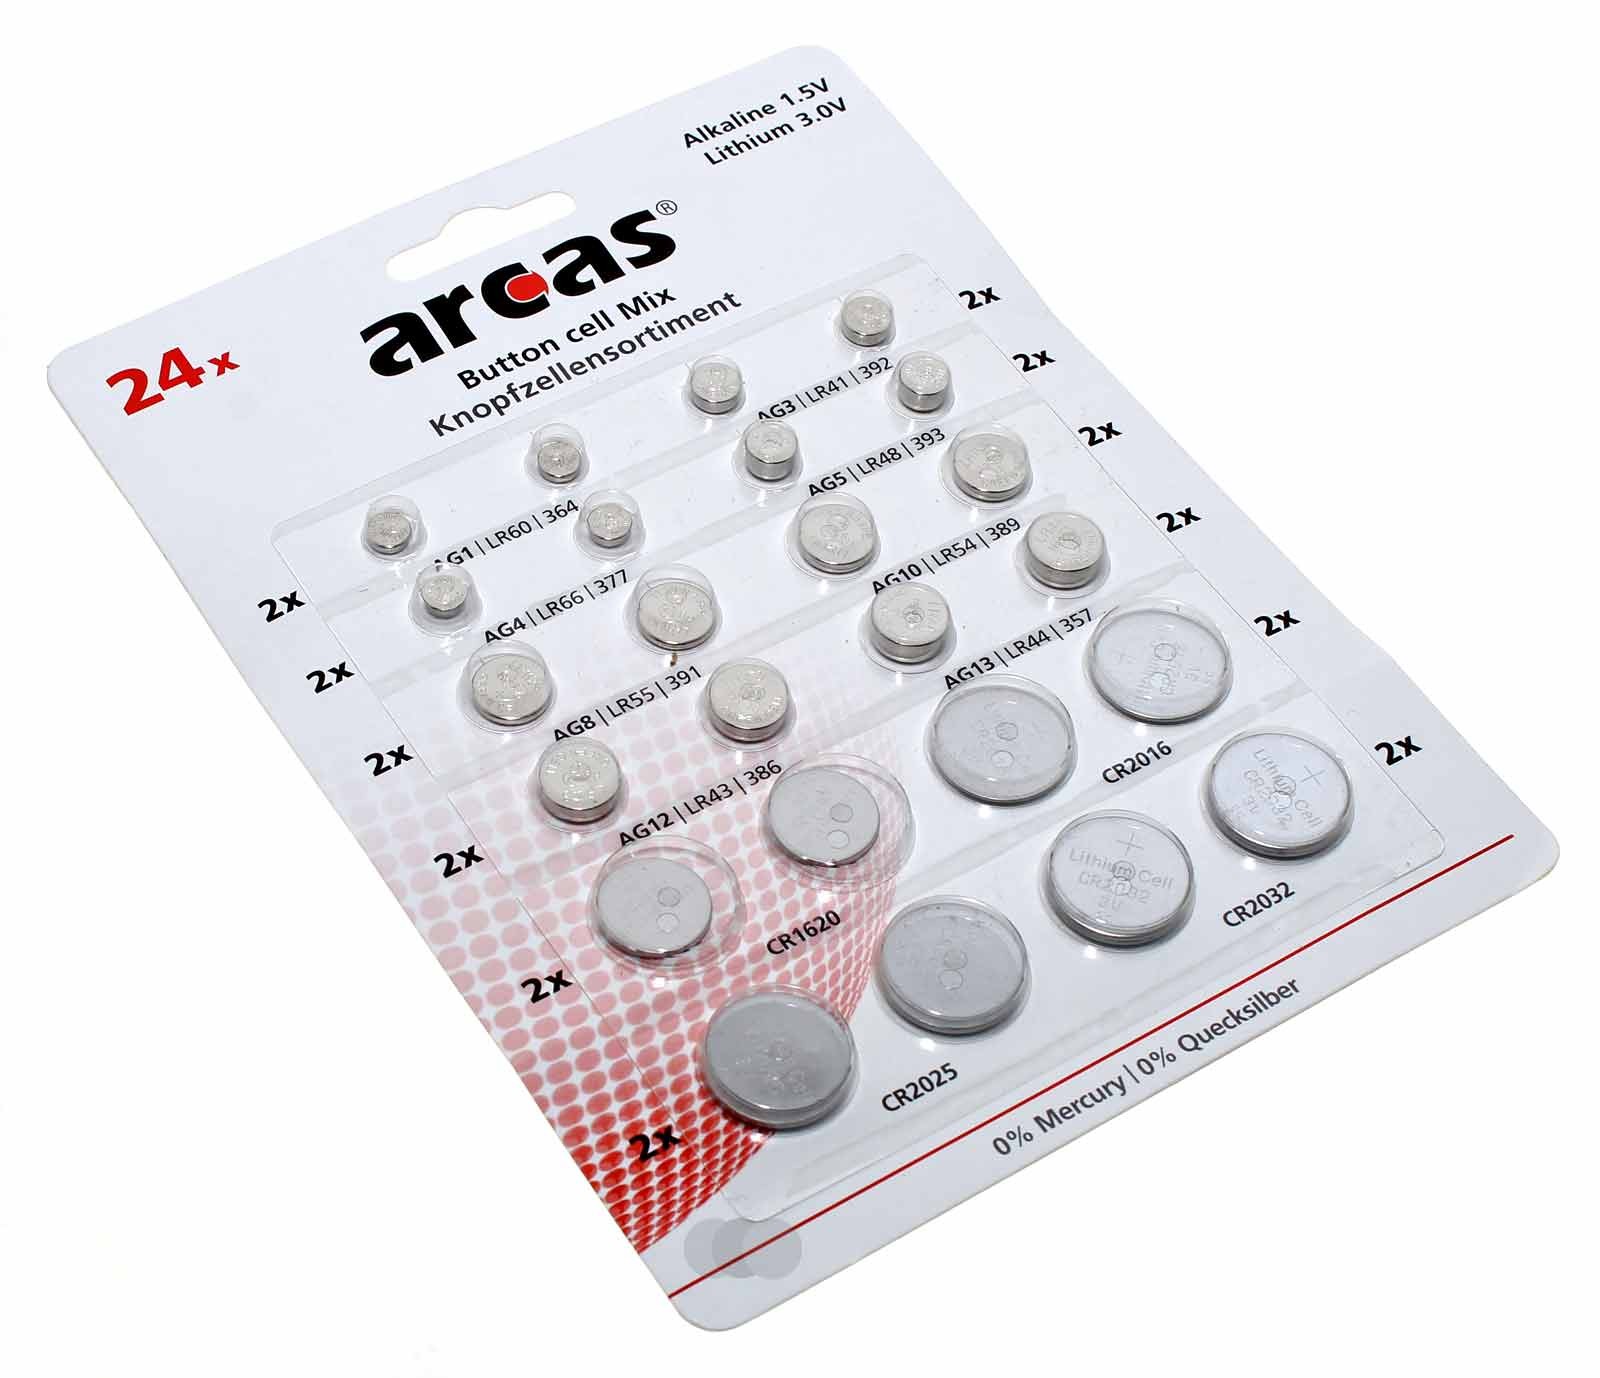 24 Stk. Arcas Knopfzellen-Set Alkaline + Lithium je 2x AG1, AG3, AG4, AG5, AG8, AG10, AG12, AG13, CR1620, CR2016, CR2025, CR2032